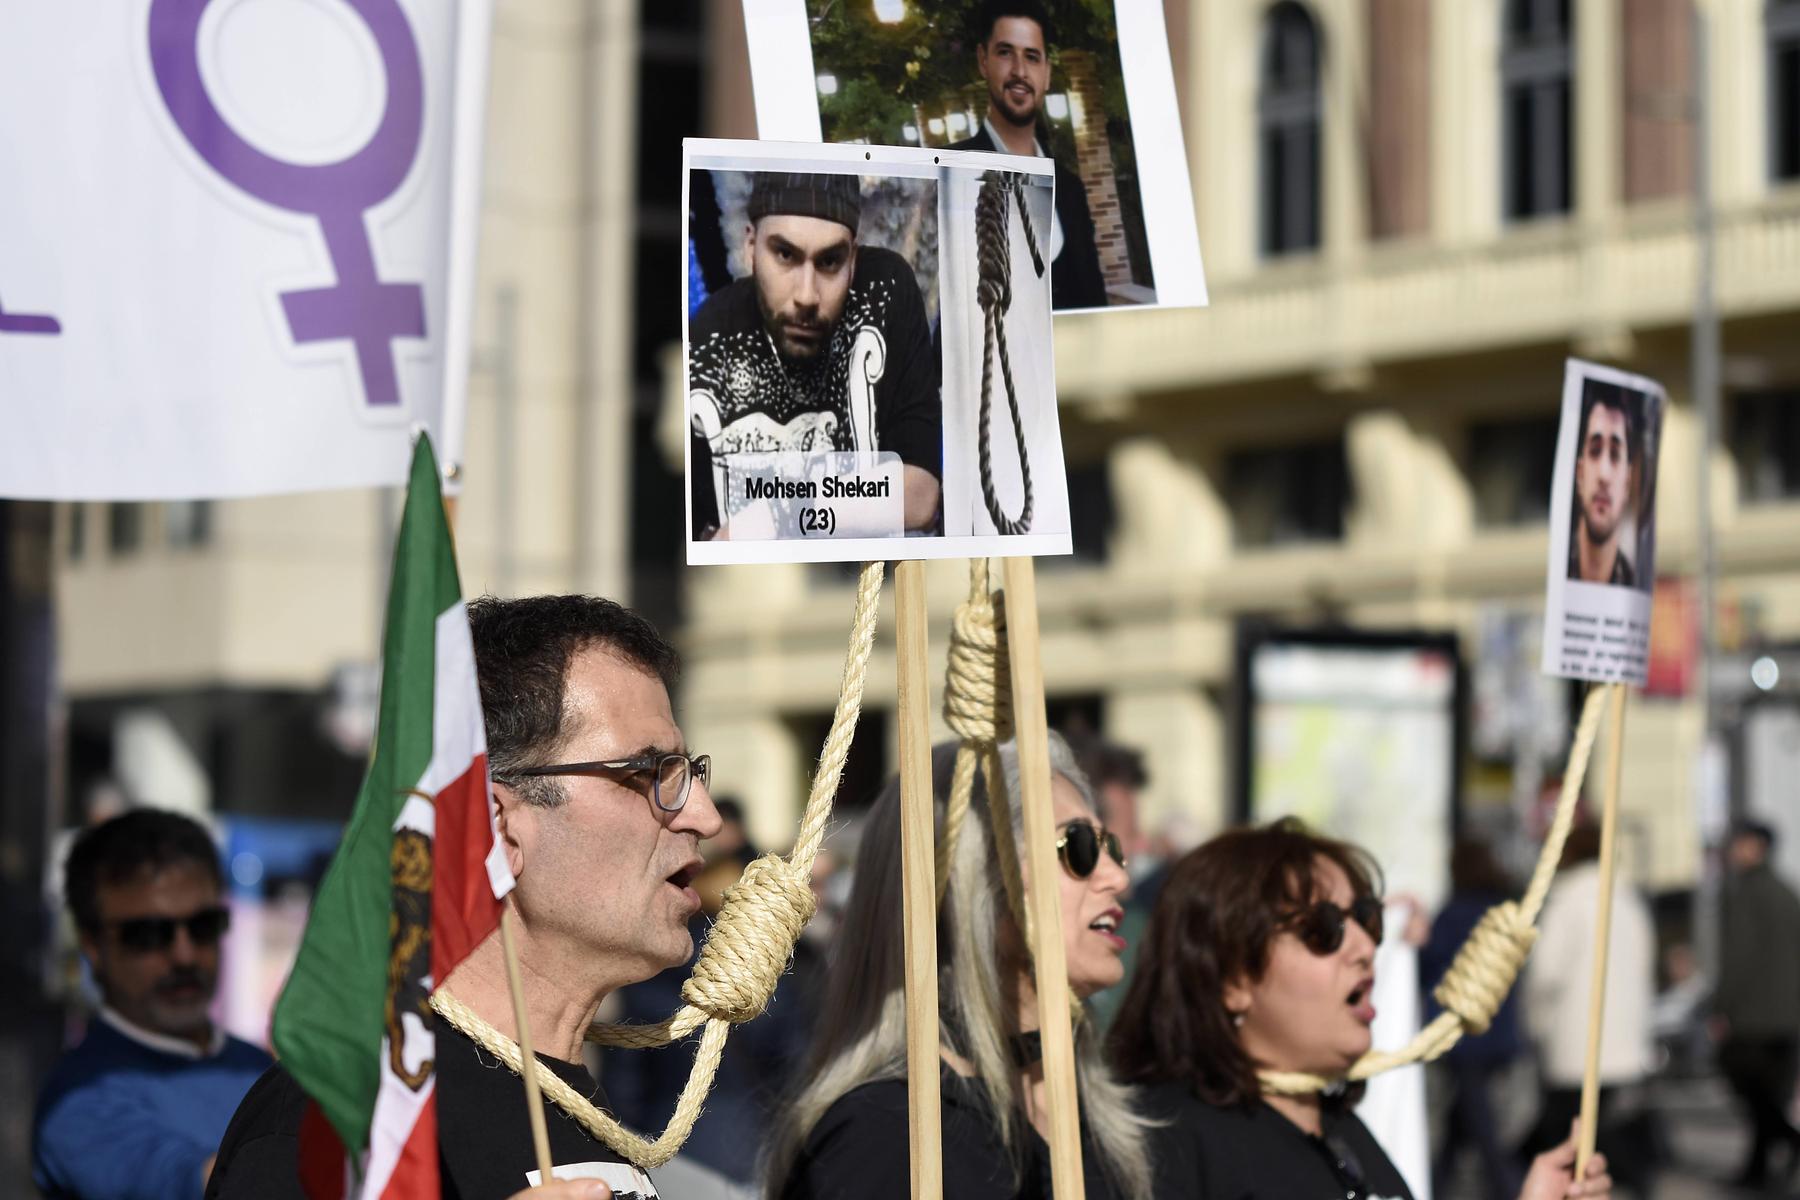 das iranische regime will den kritischen rapper salehi tot sehen